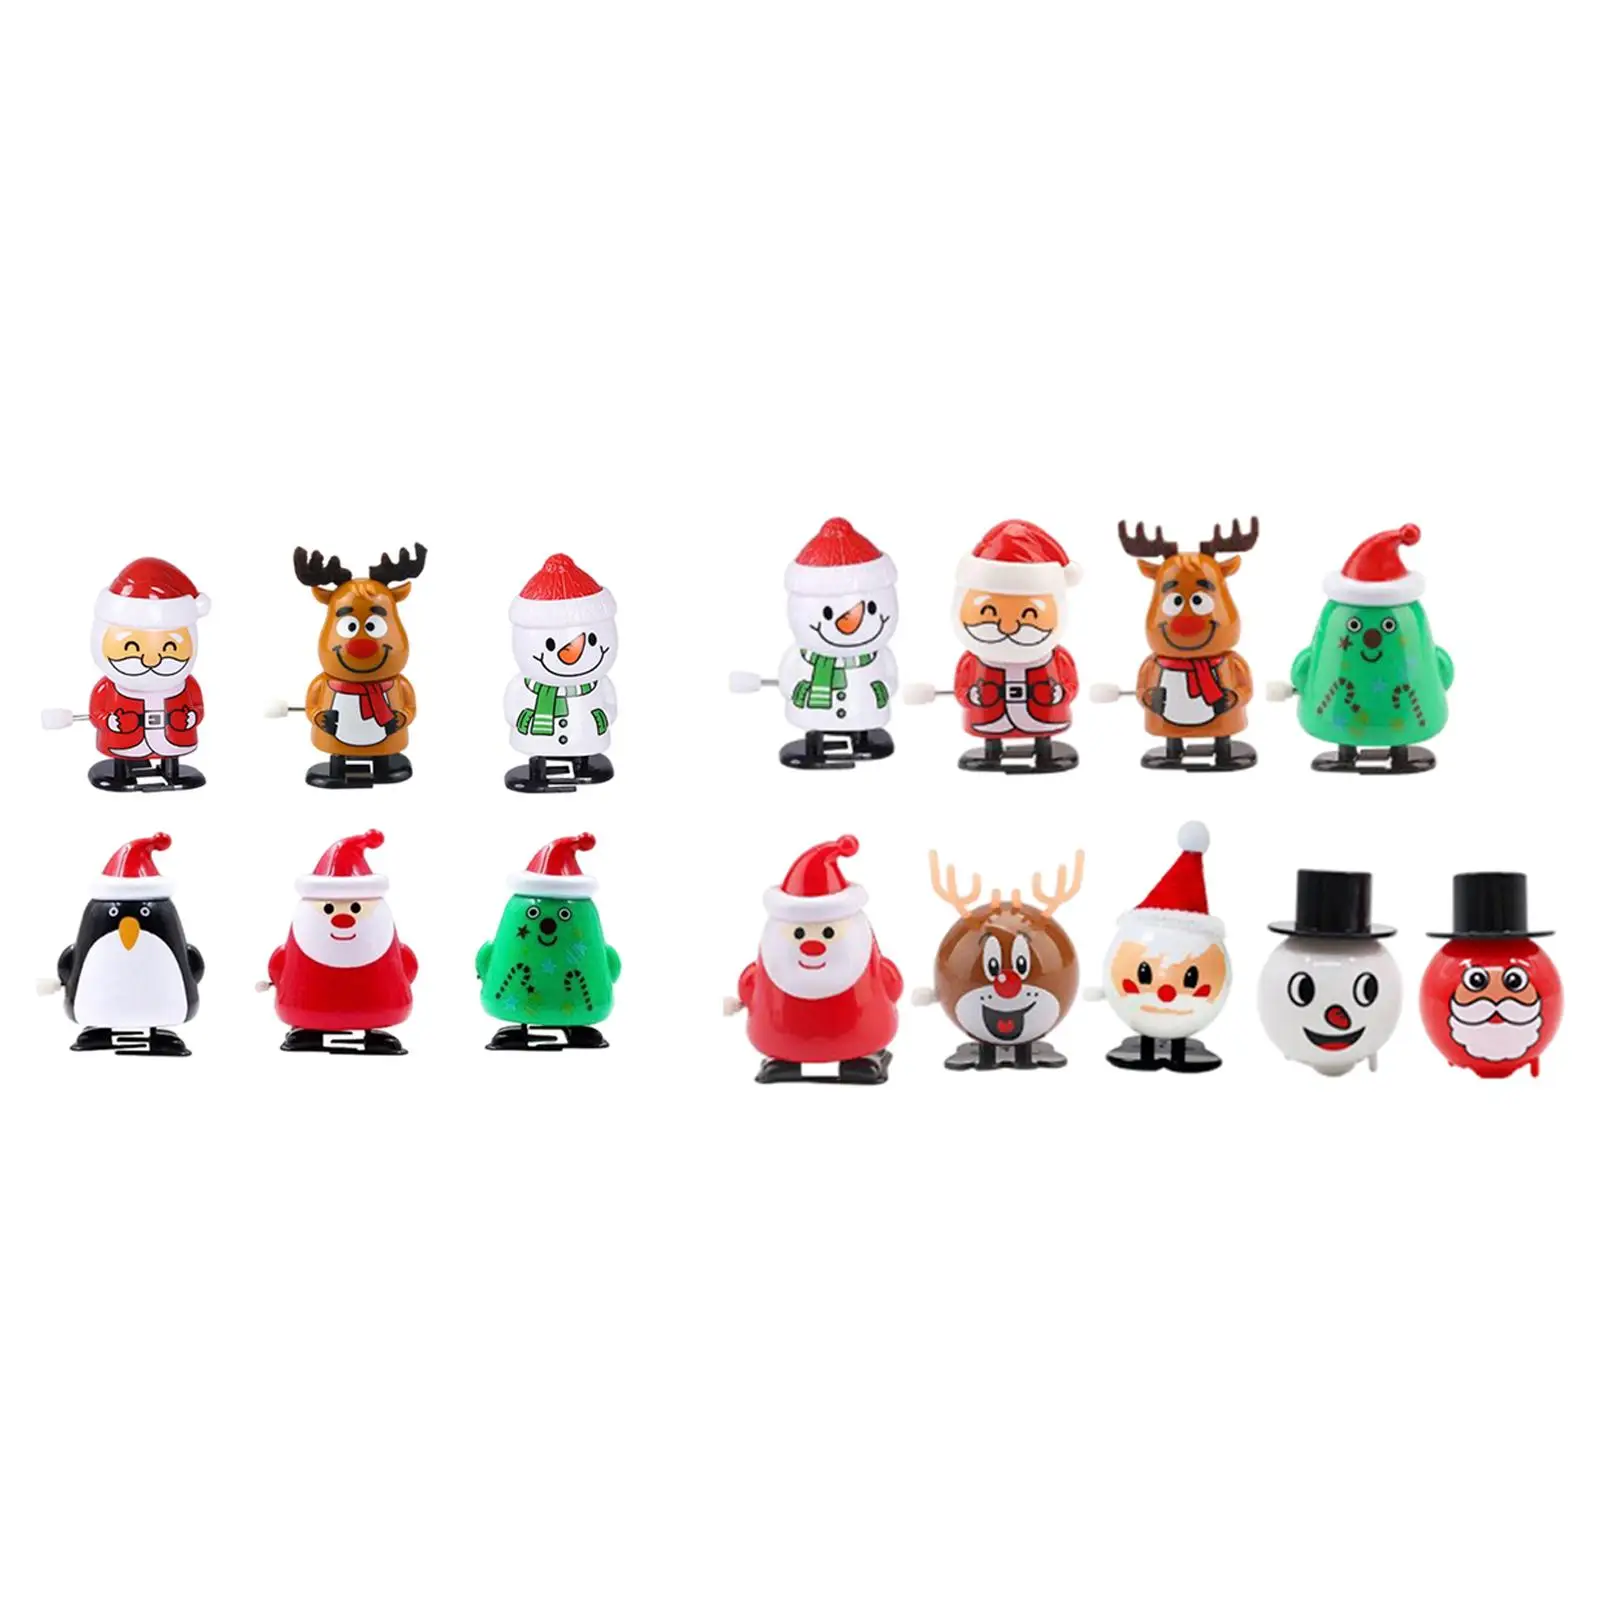  Toys, Filler,Figure Ornaments Christmas  Clockwork Toys Jumping Toys for  Favors Kids Children